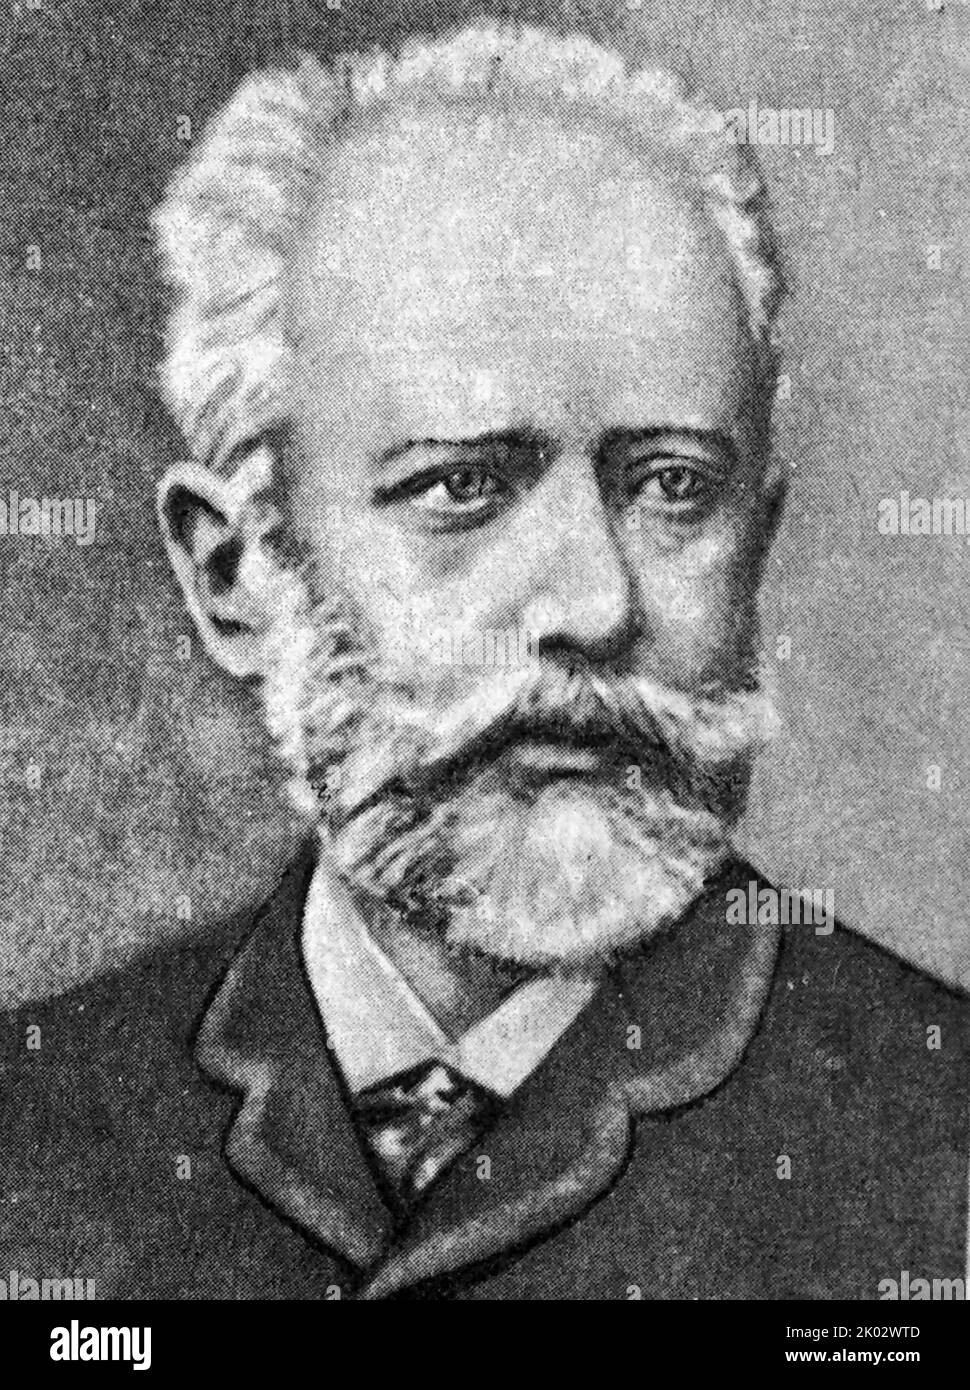 Pyotr Ilyich Tchaikovsky (1840 - 1893) compositeur russe de la période romantique. Banque D'Images